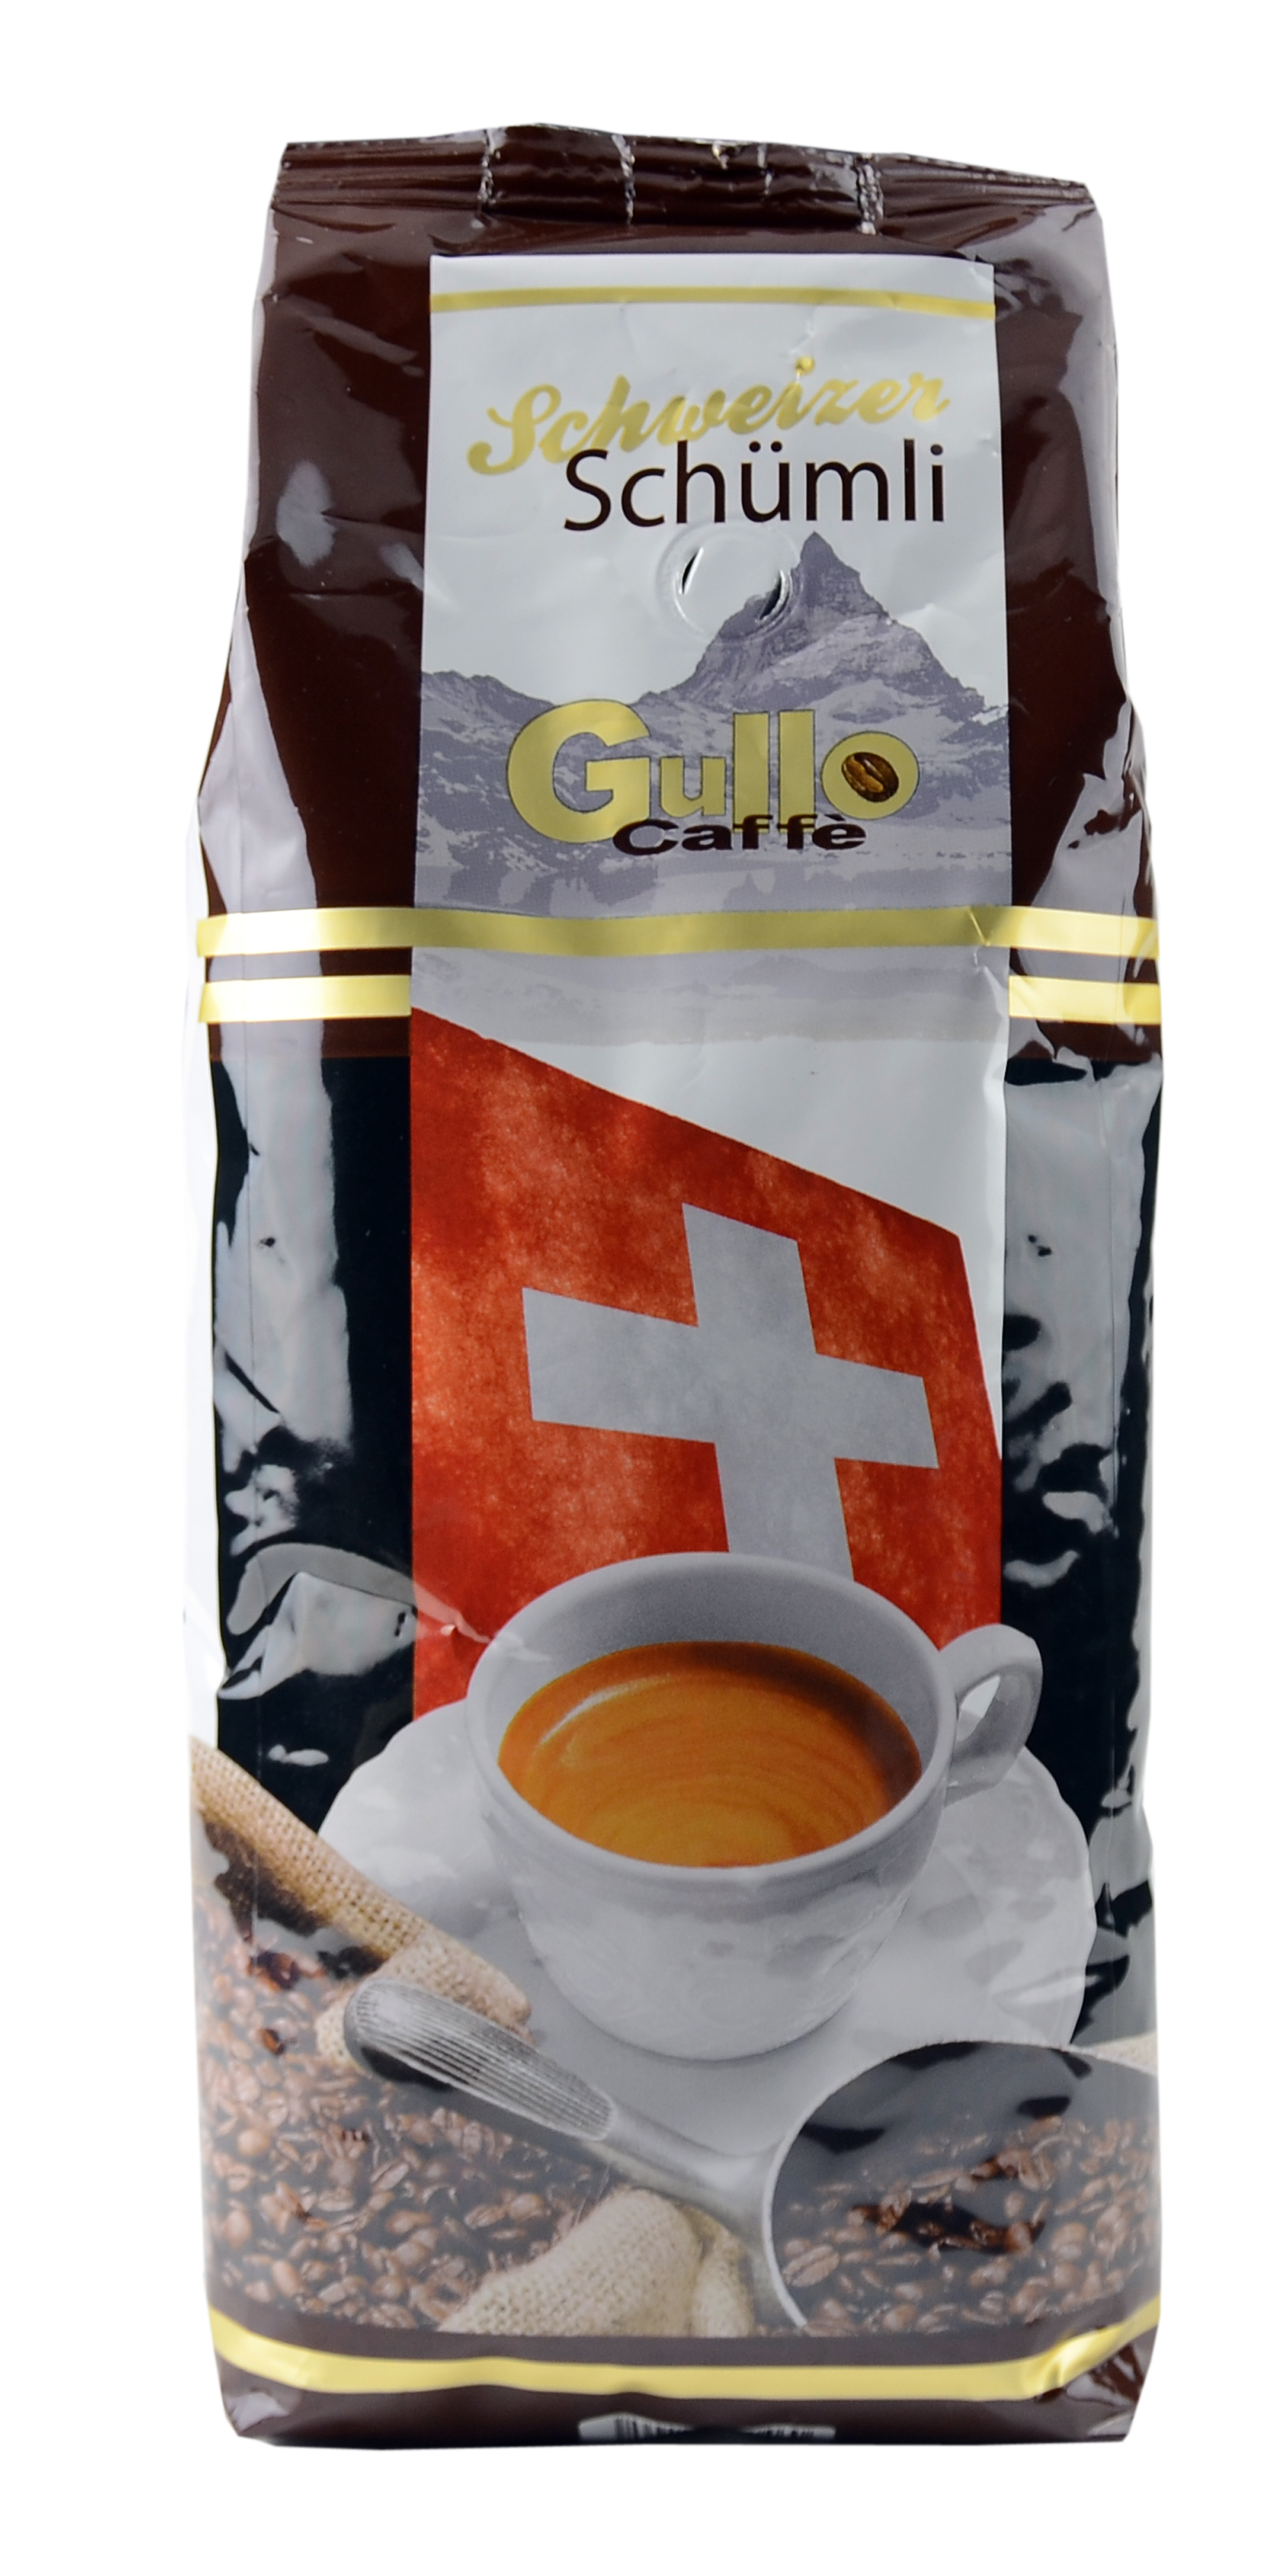 GULLO CAFFE' SCHÜMLI